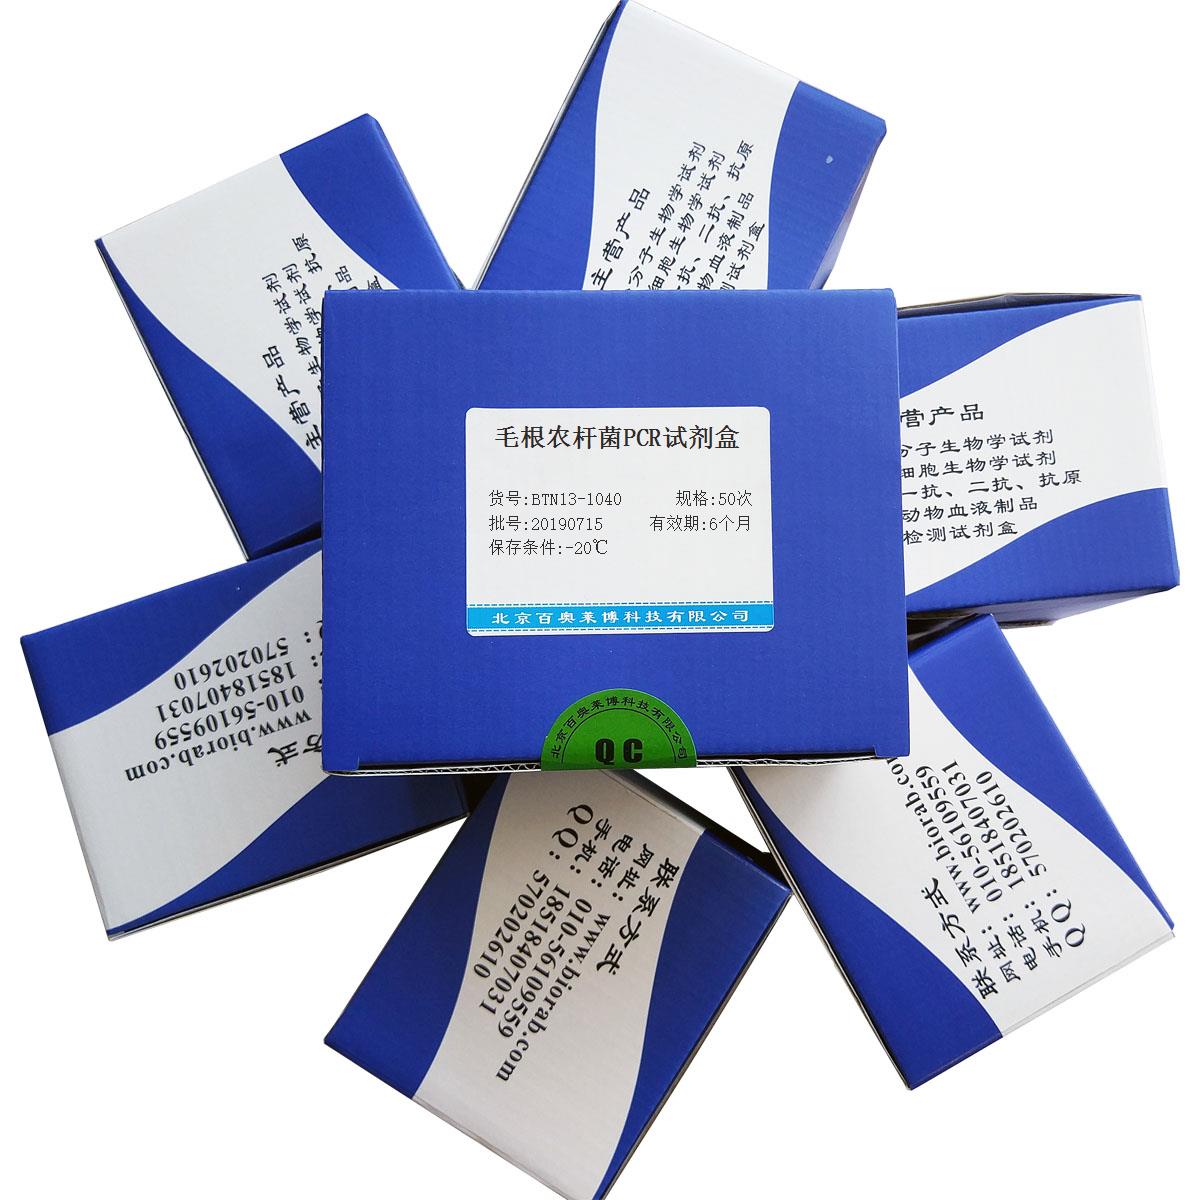 毛根农杆菌PCR试剂盒北京价格